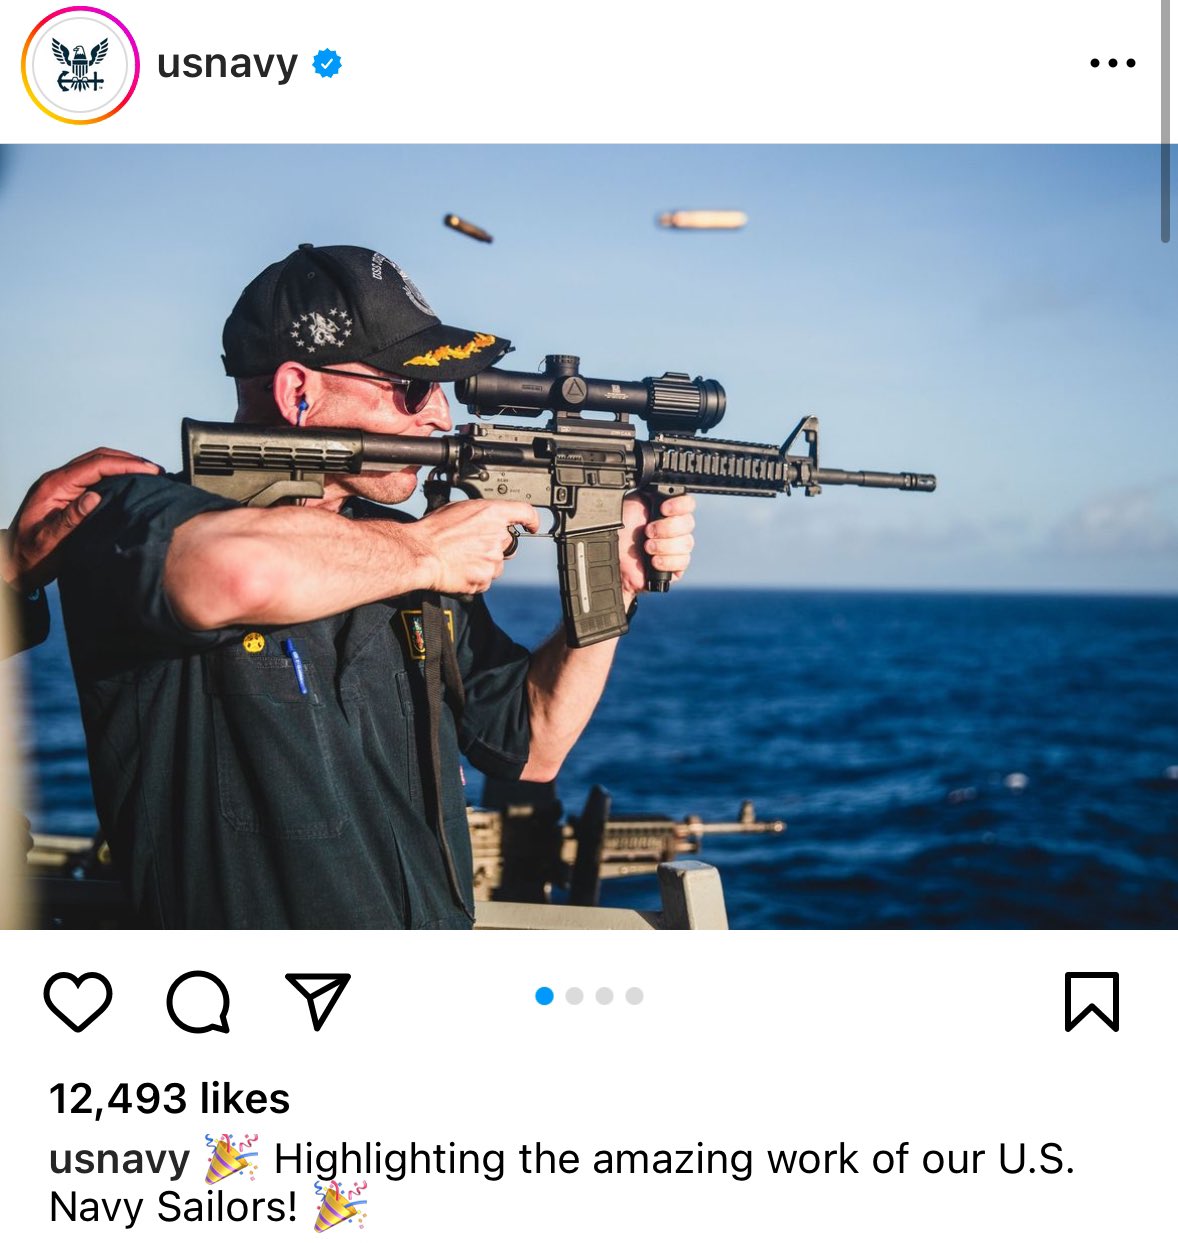 Tải khoản Instagram của Hải quân Mỹ đăng ảnh ông Cameron Yaste cầm súng trường lắp ngược ống ngắm